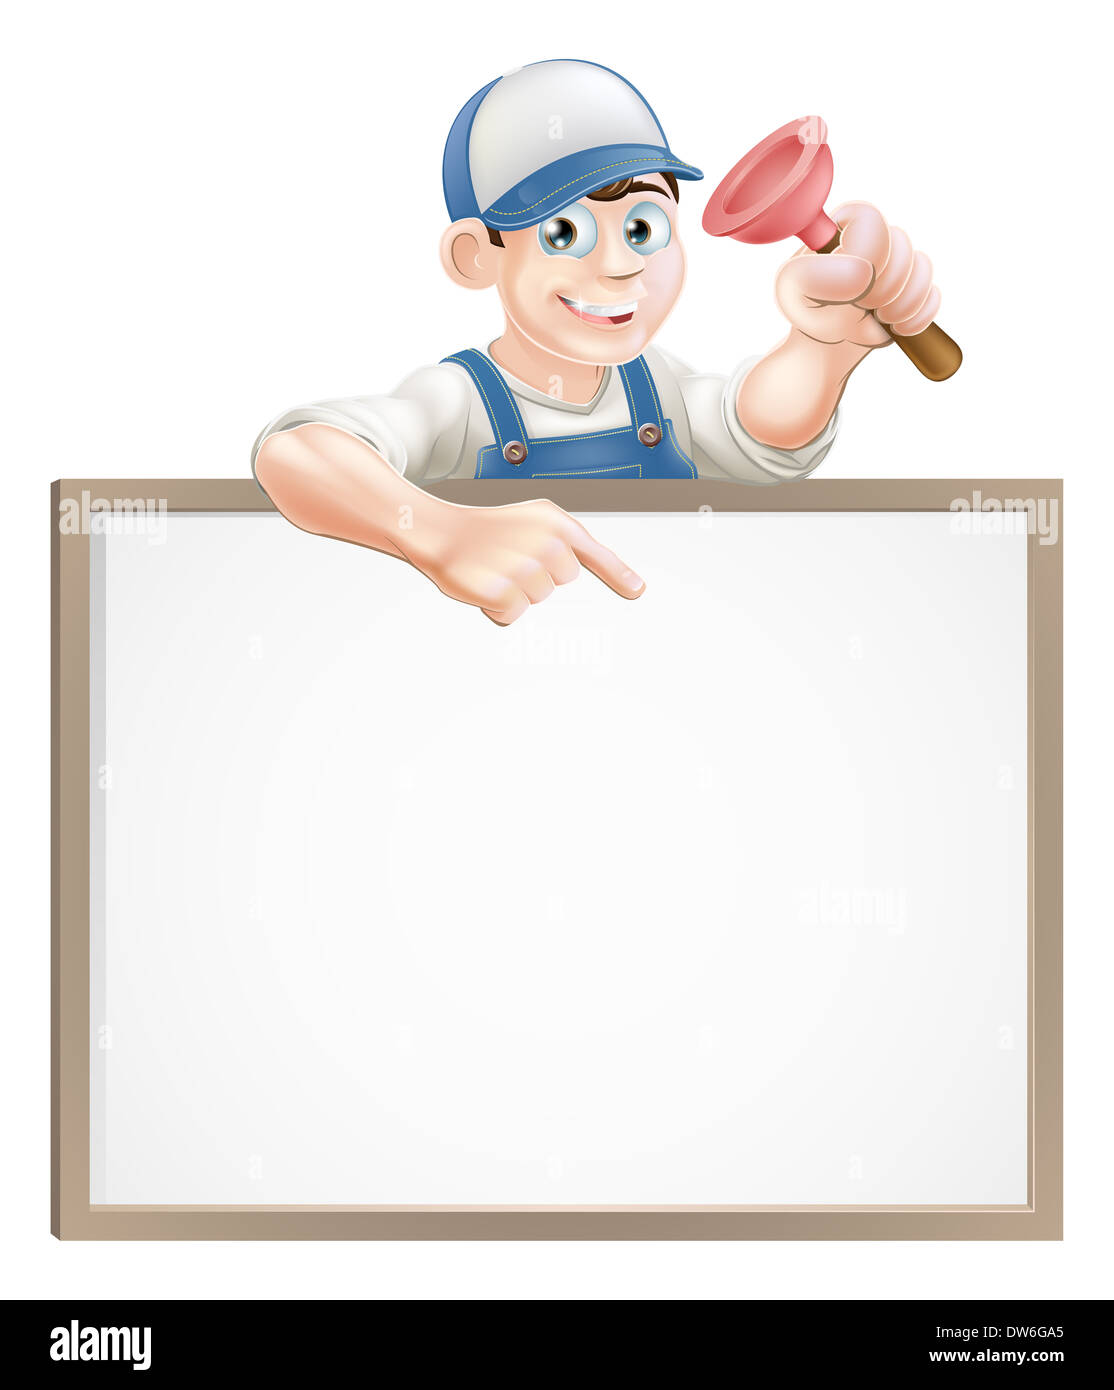 Un plombier ou un plongeur et d'une holding janitor peeking sur un signe et de pointage Banque D'Images